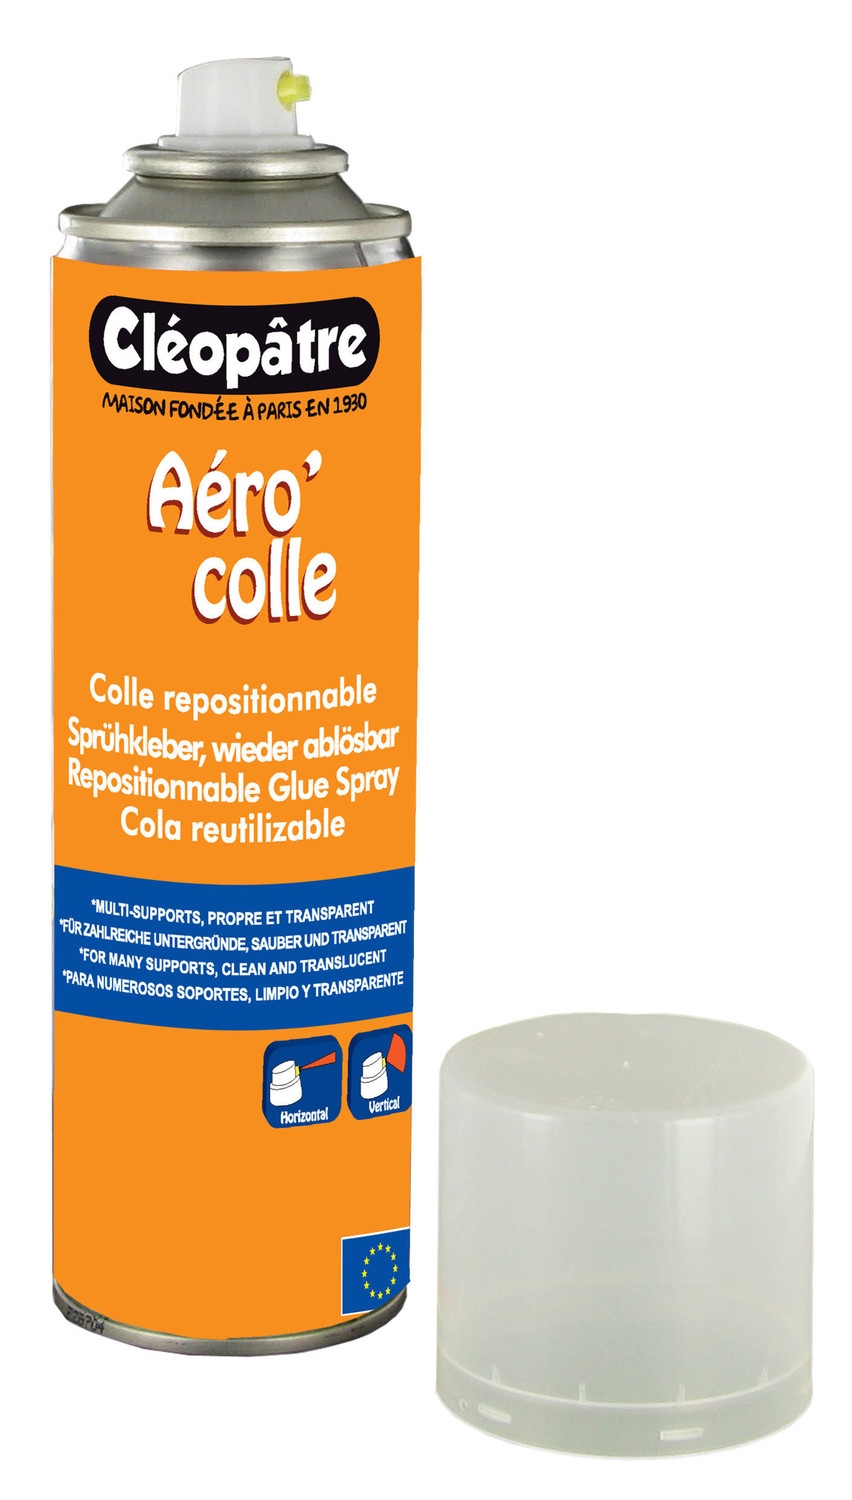 Colle spray Aéro'colle repositionnable 250 ml - Cléopâtre ref ACR250